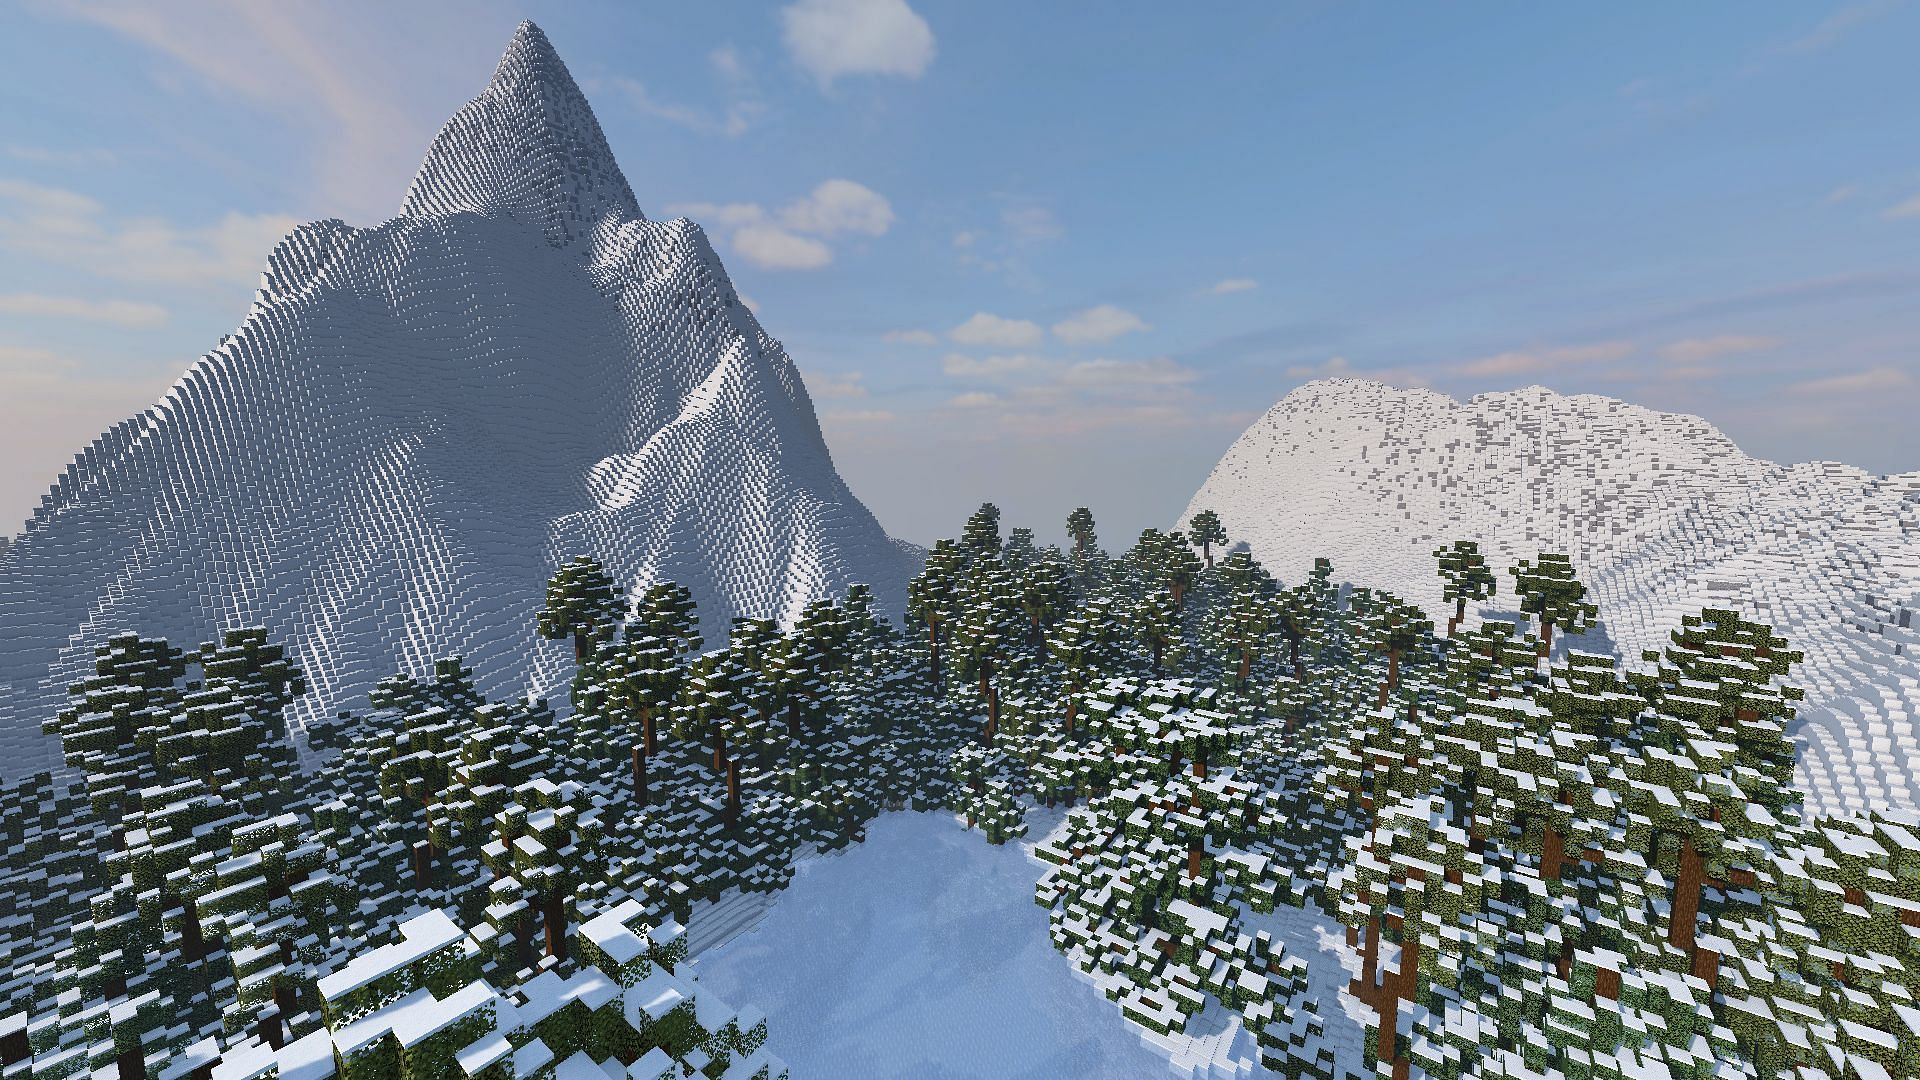 The Redditor built their base on a mountainside (Image via Mojang)